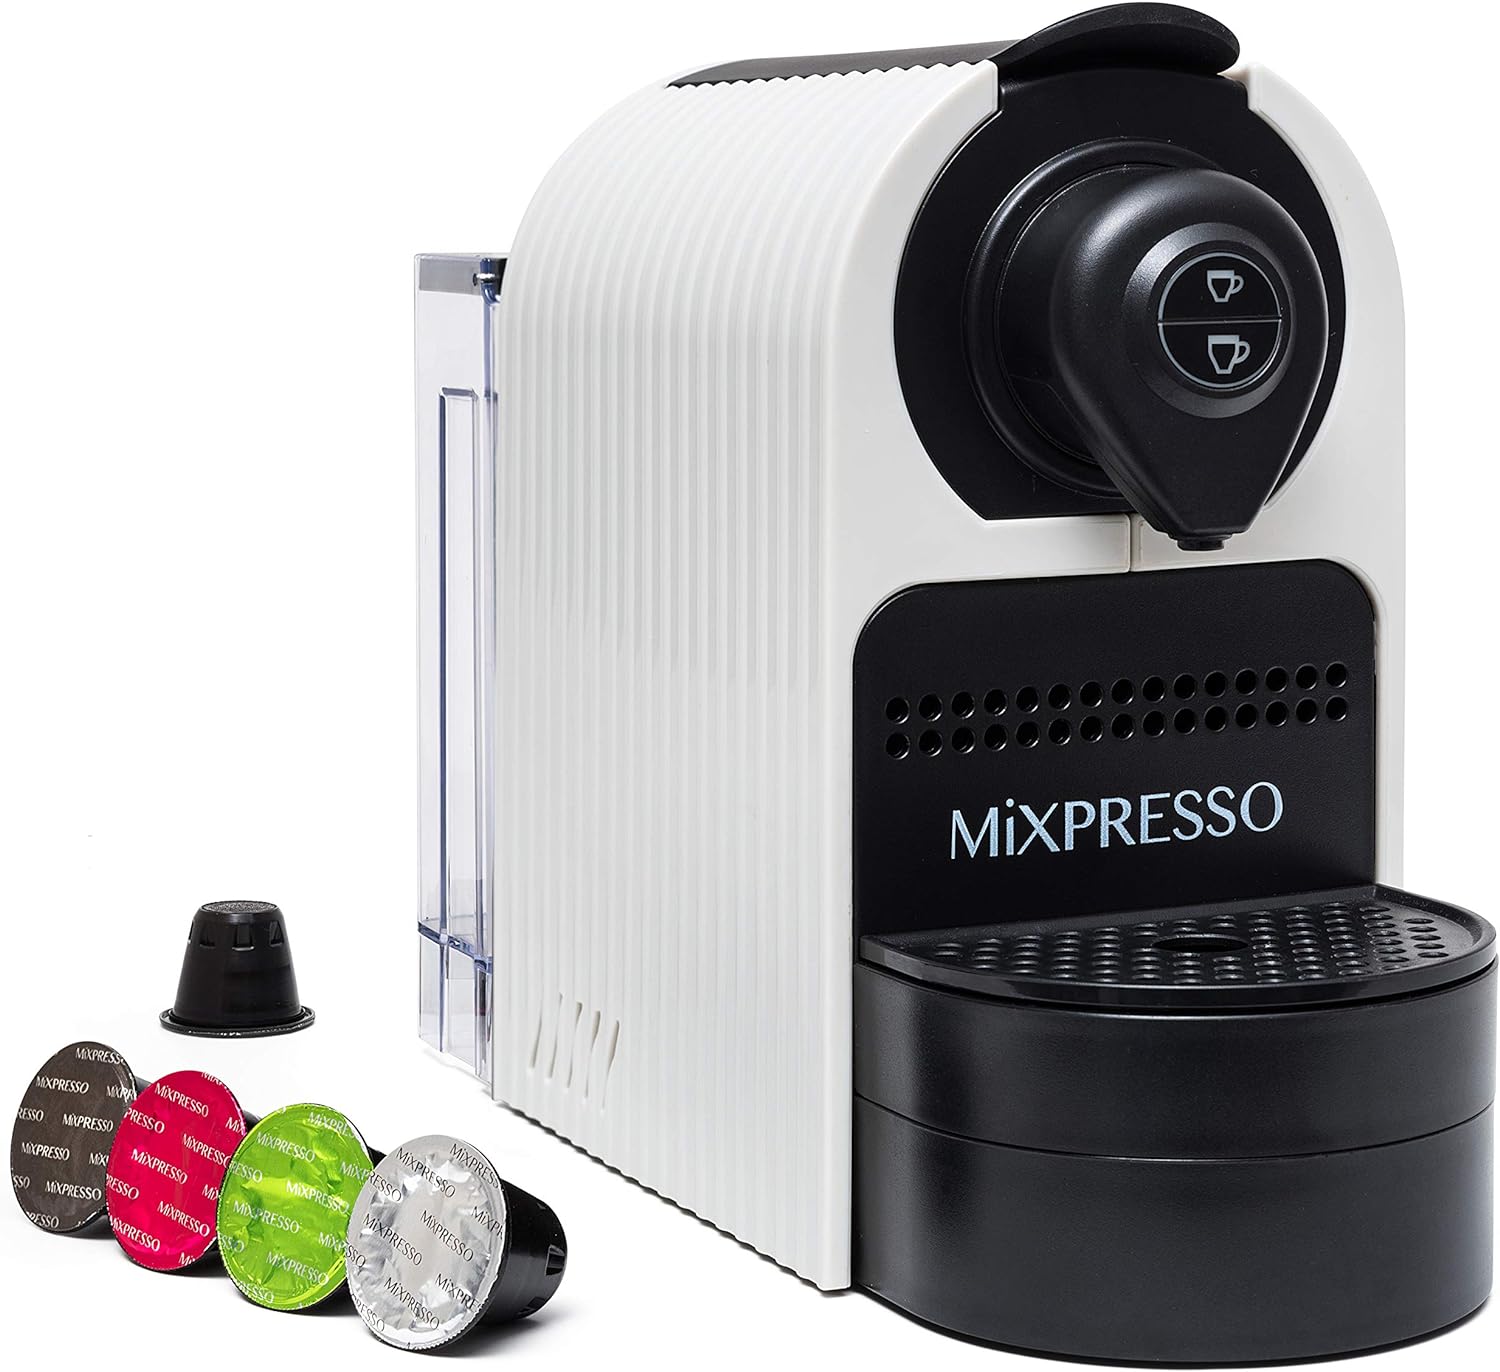 Mixpresso Espresso Machine Review